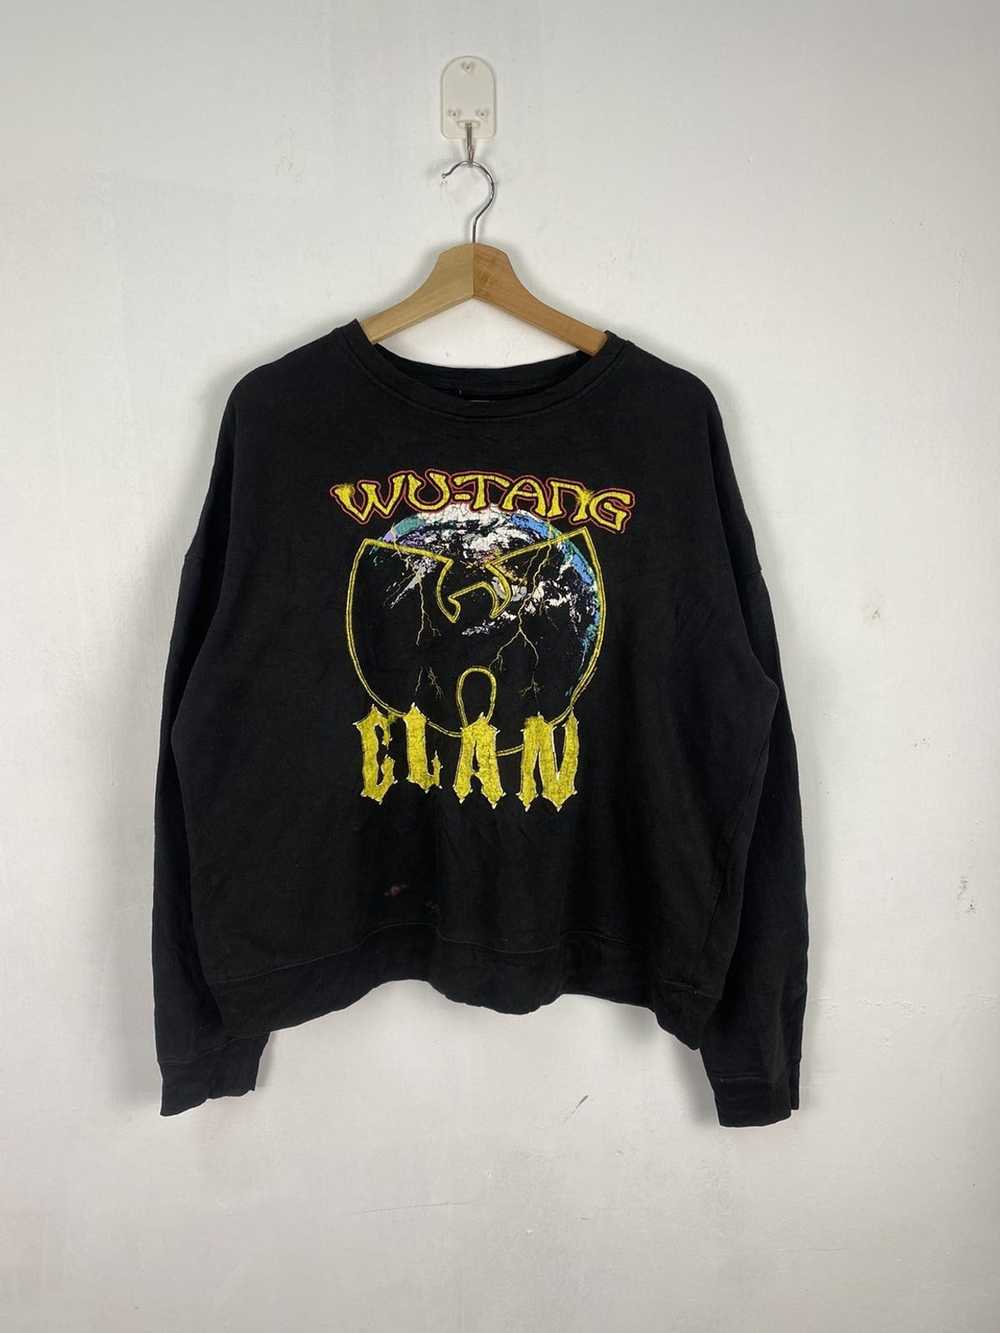 Wu Tang Clan Wutang clan baggy sweatshirt oversiz… - image 1